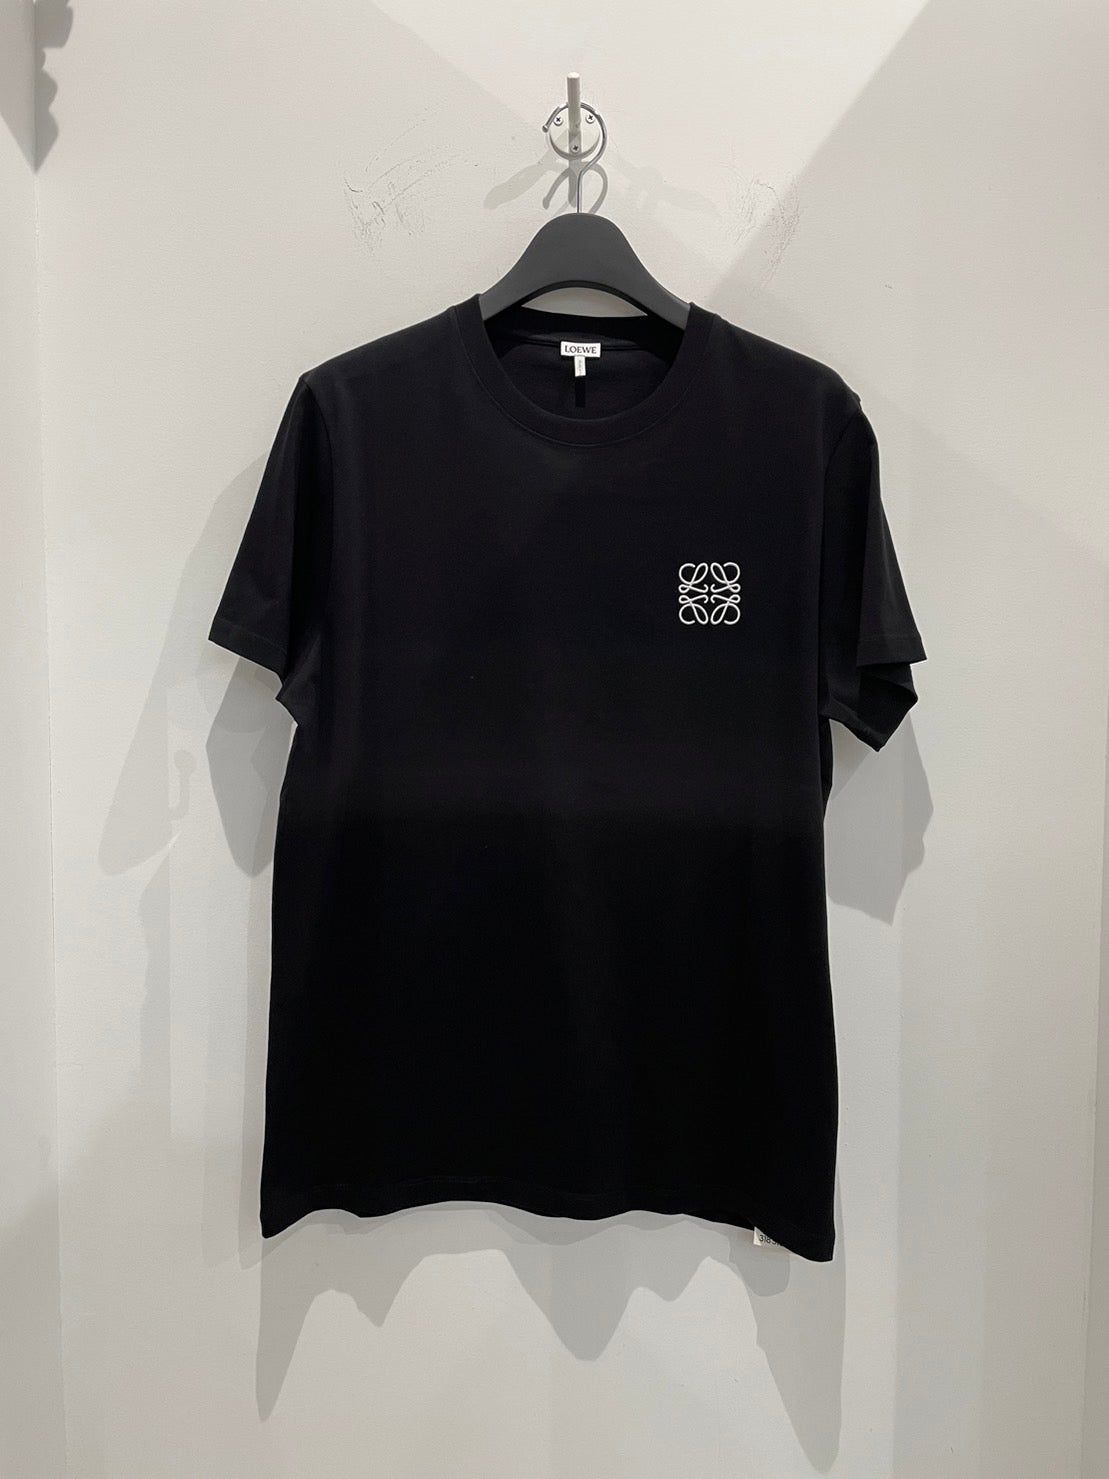 LOEWE/ロエベ Tシャツ ブラック(黒)